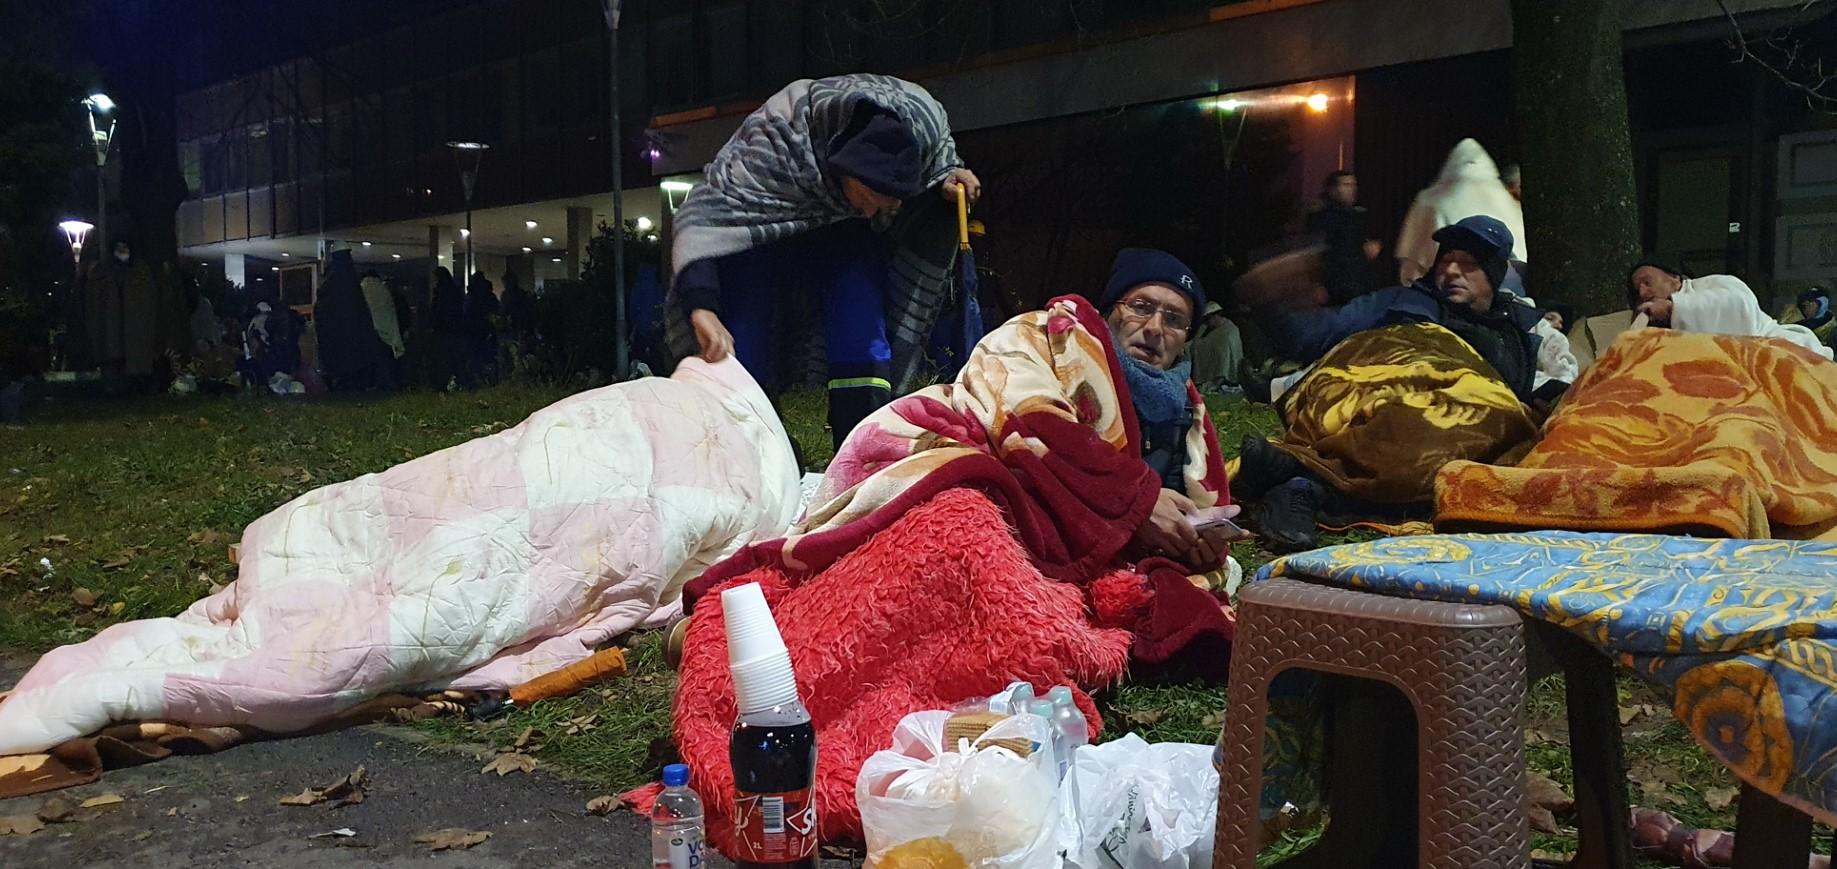 Tužni prizori ispred zgrade Vlade FBiH: Rudari umotani u deke pod vedrim nebom